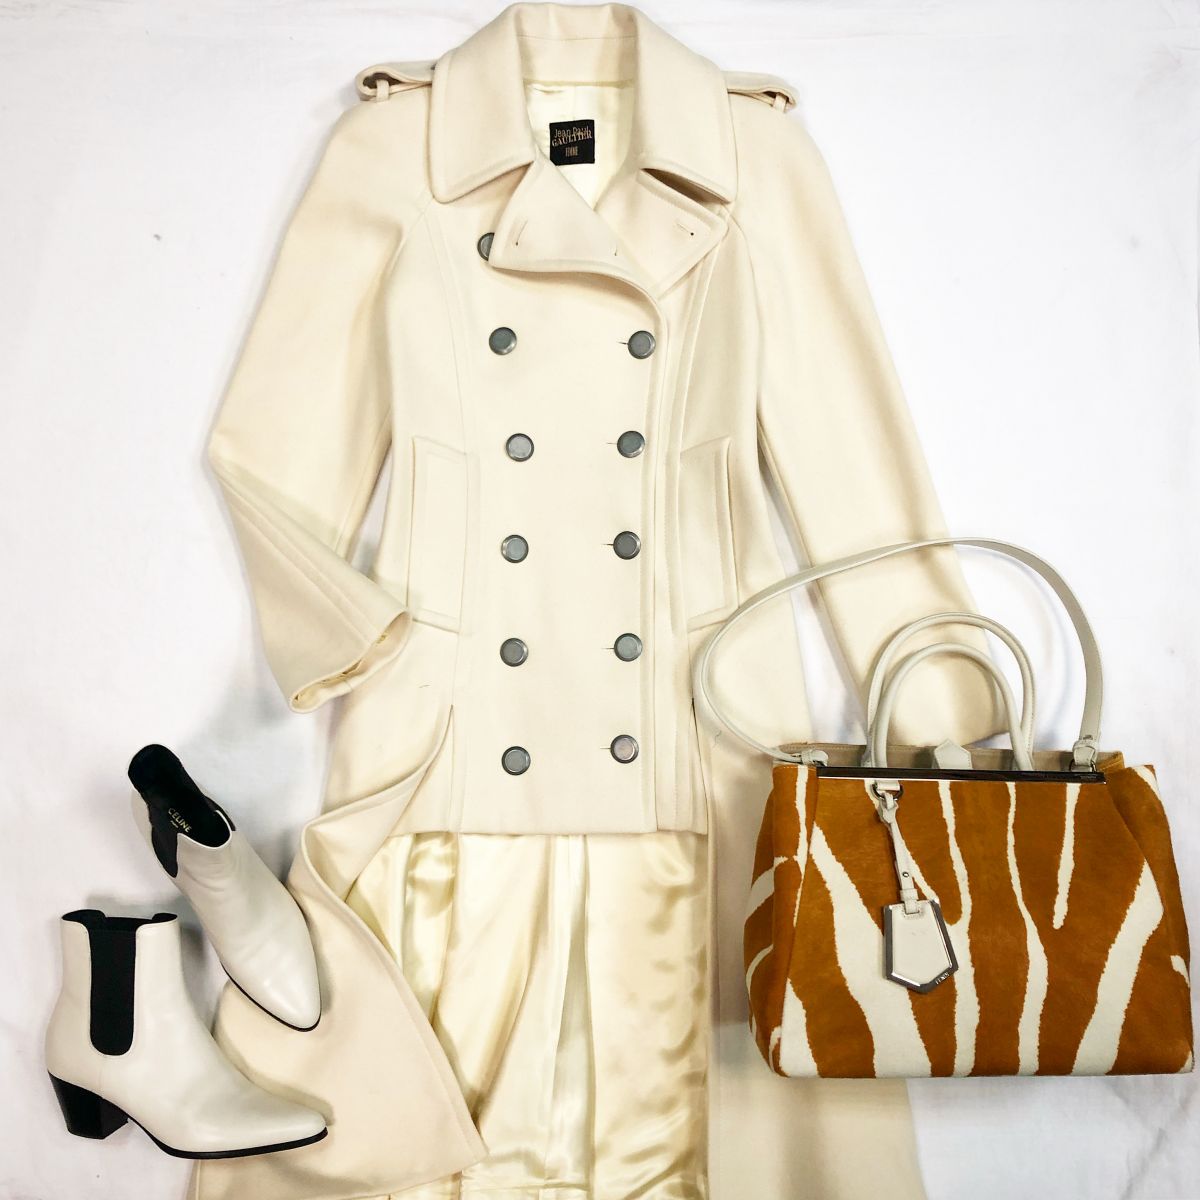 Пальто Jean Paul Gaultier размер 42 цена 23 078 руб Ботинки Celine  размер 39.5 цена 33 847 руб Сумка Fendi